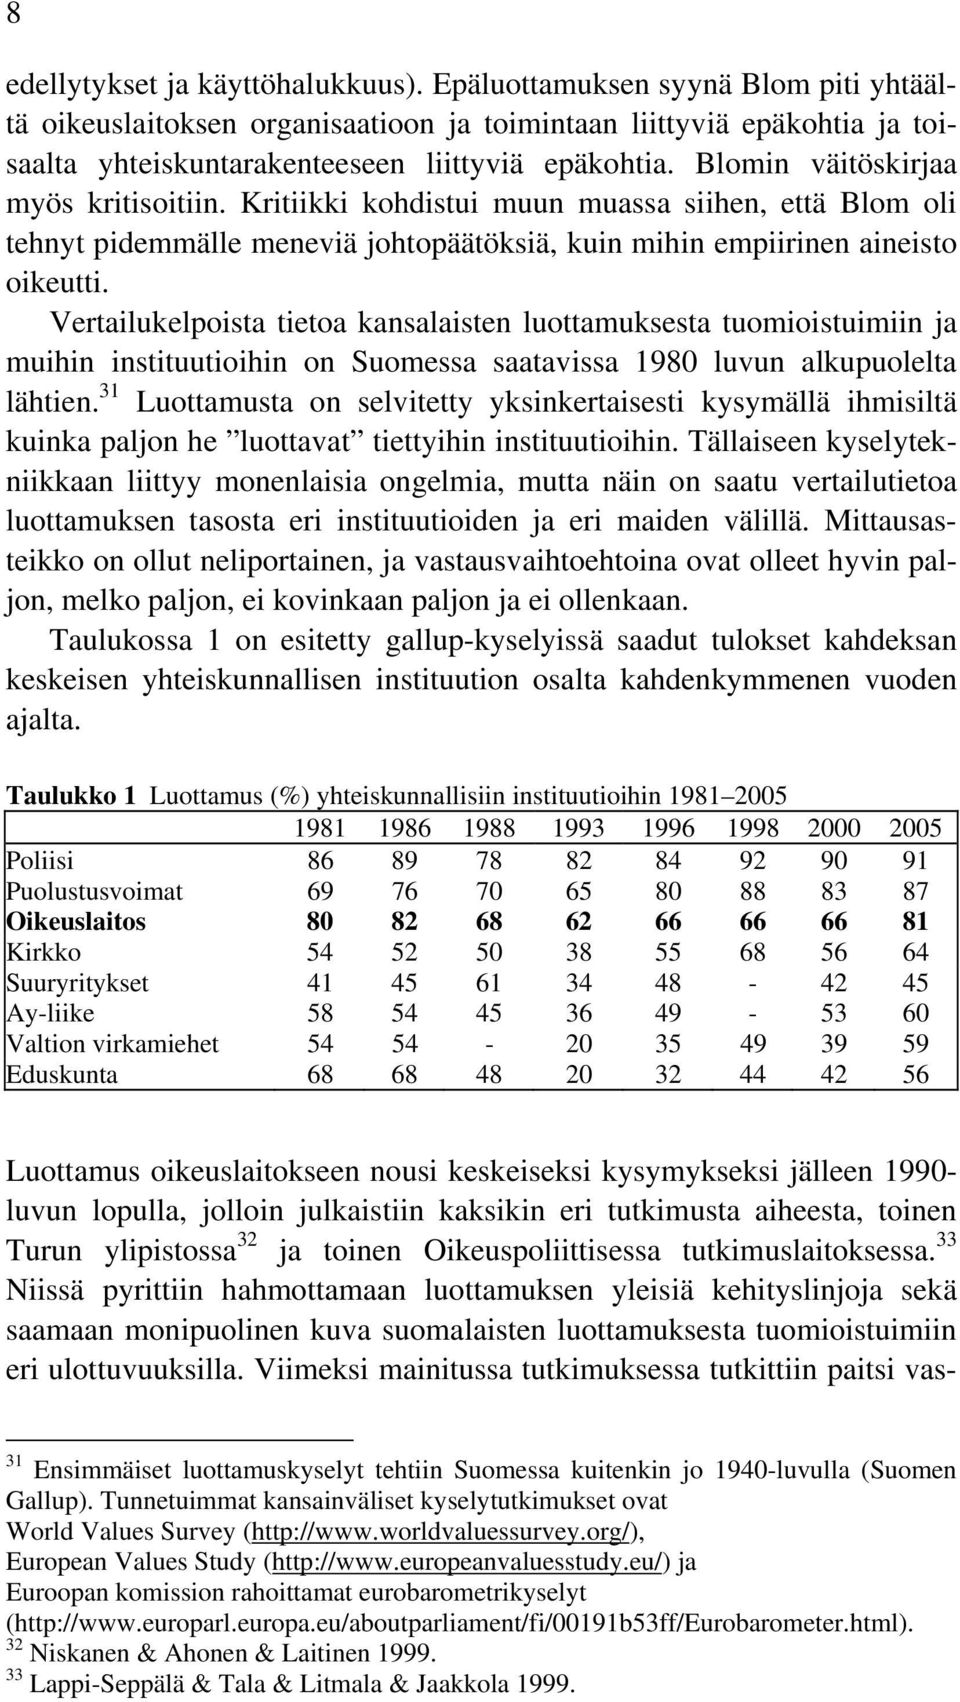 Vertailukelpoista tietoa kansalaisten luottamuksesta tuomioistuimiin ja muihin instituutioihin on Suomessa saatavissa 1980 luvun alkupuolelta lähtien.